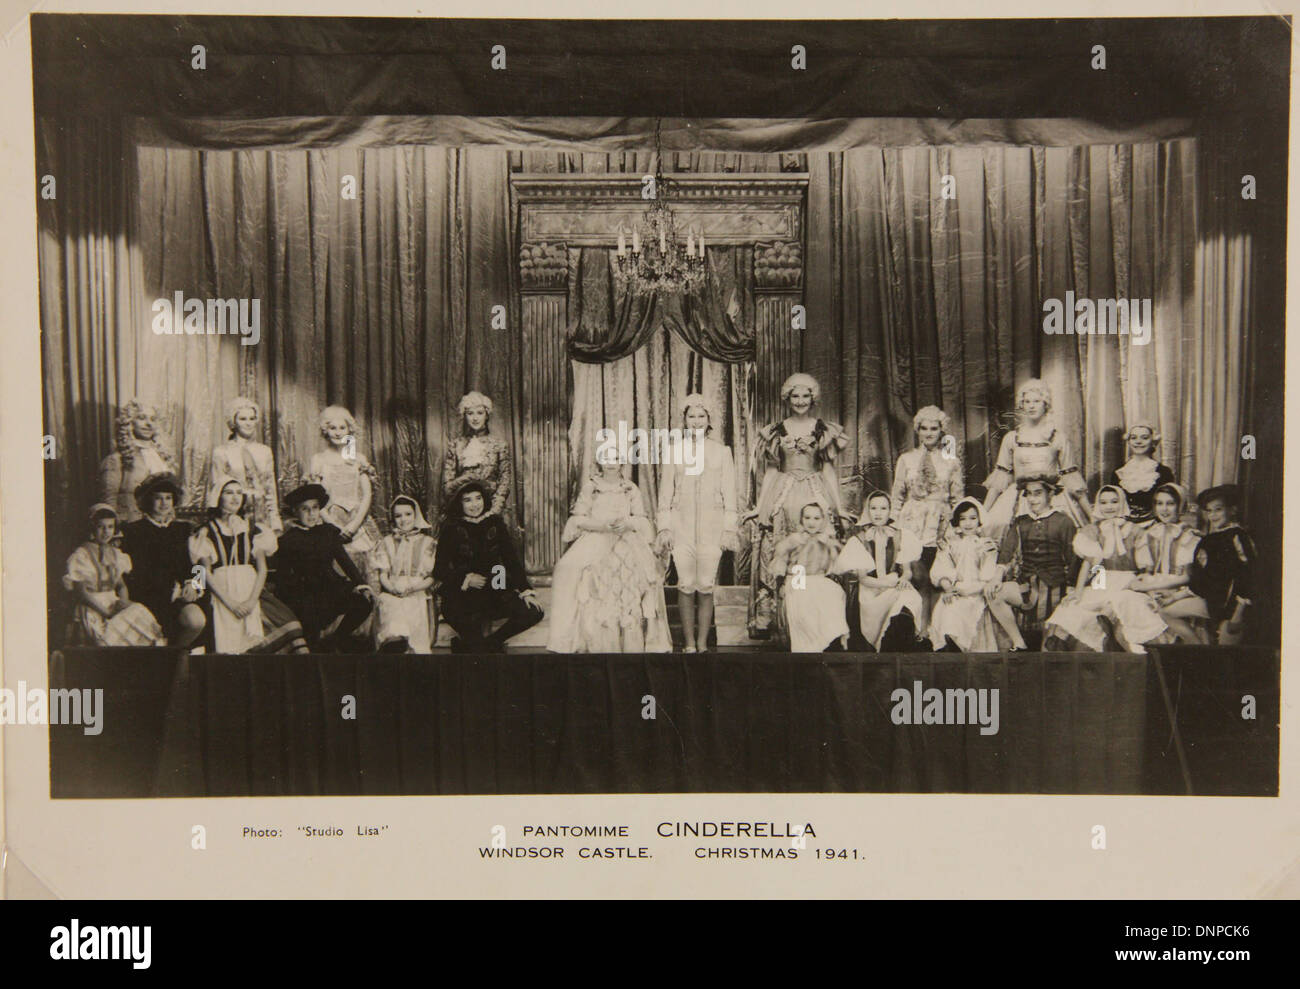 Recueillir des photographie de la princesse Margaret (centre gauche) et de la princesse Elizabeth (centre droit) dans la pièce de Cendrillon, 1941 Banque D'Images